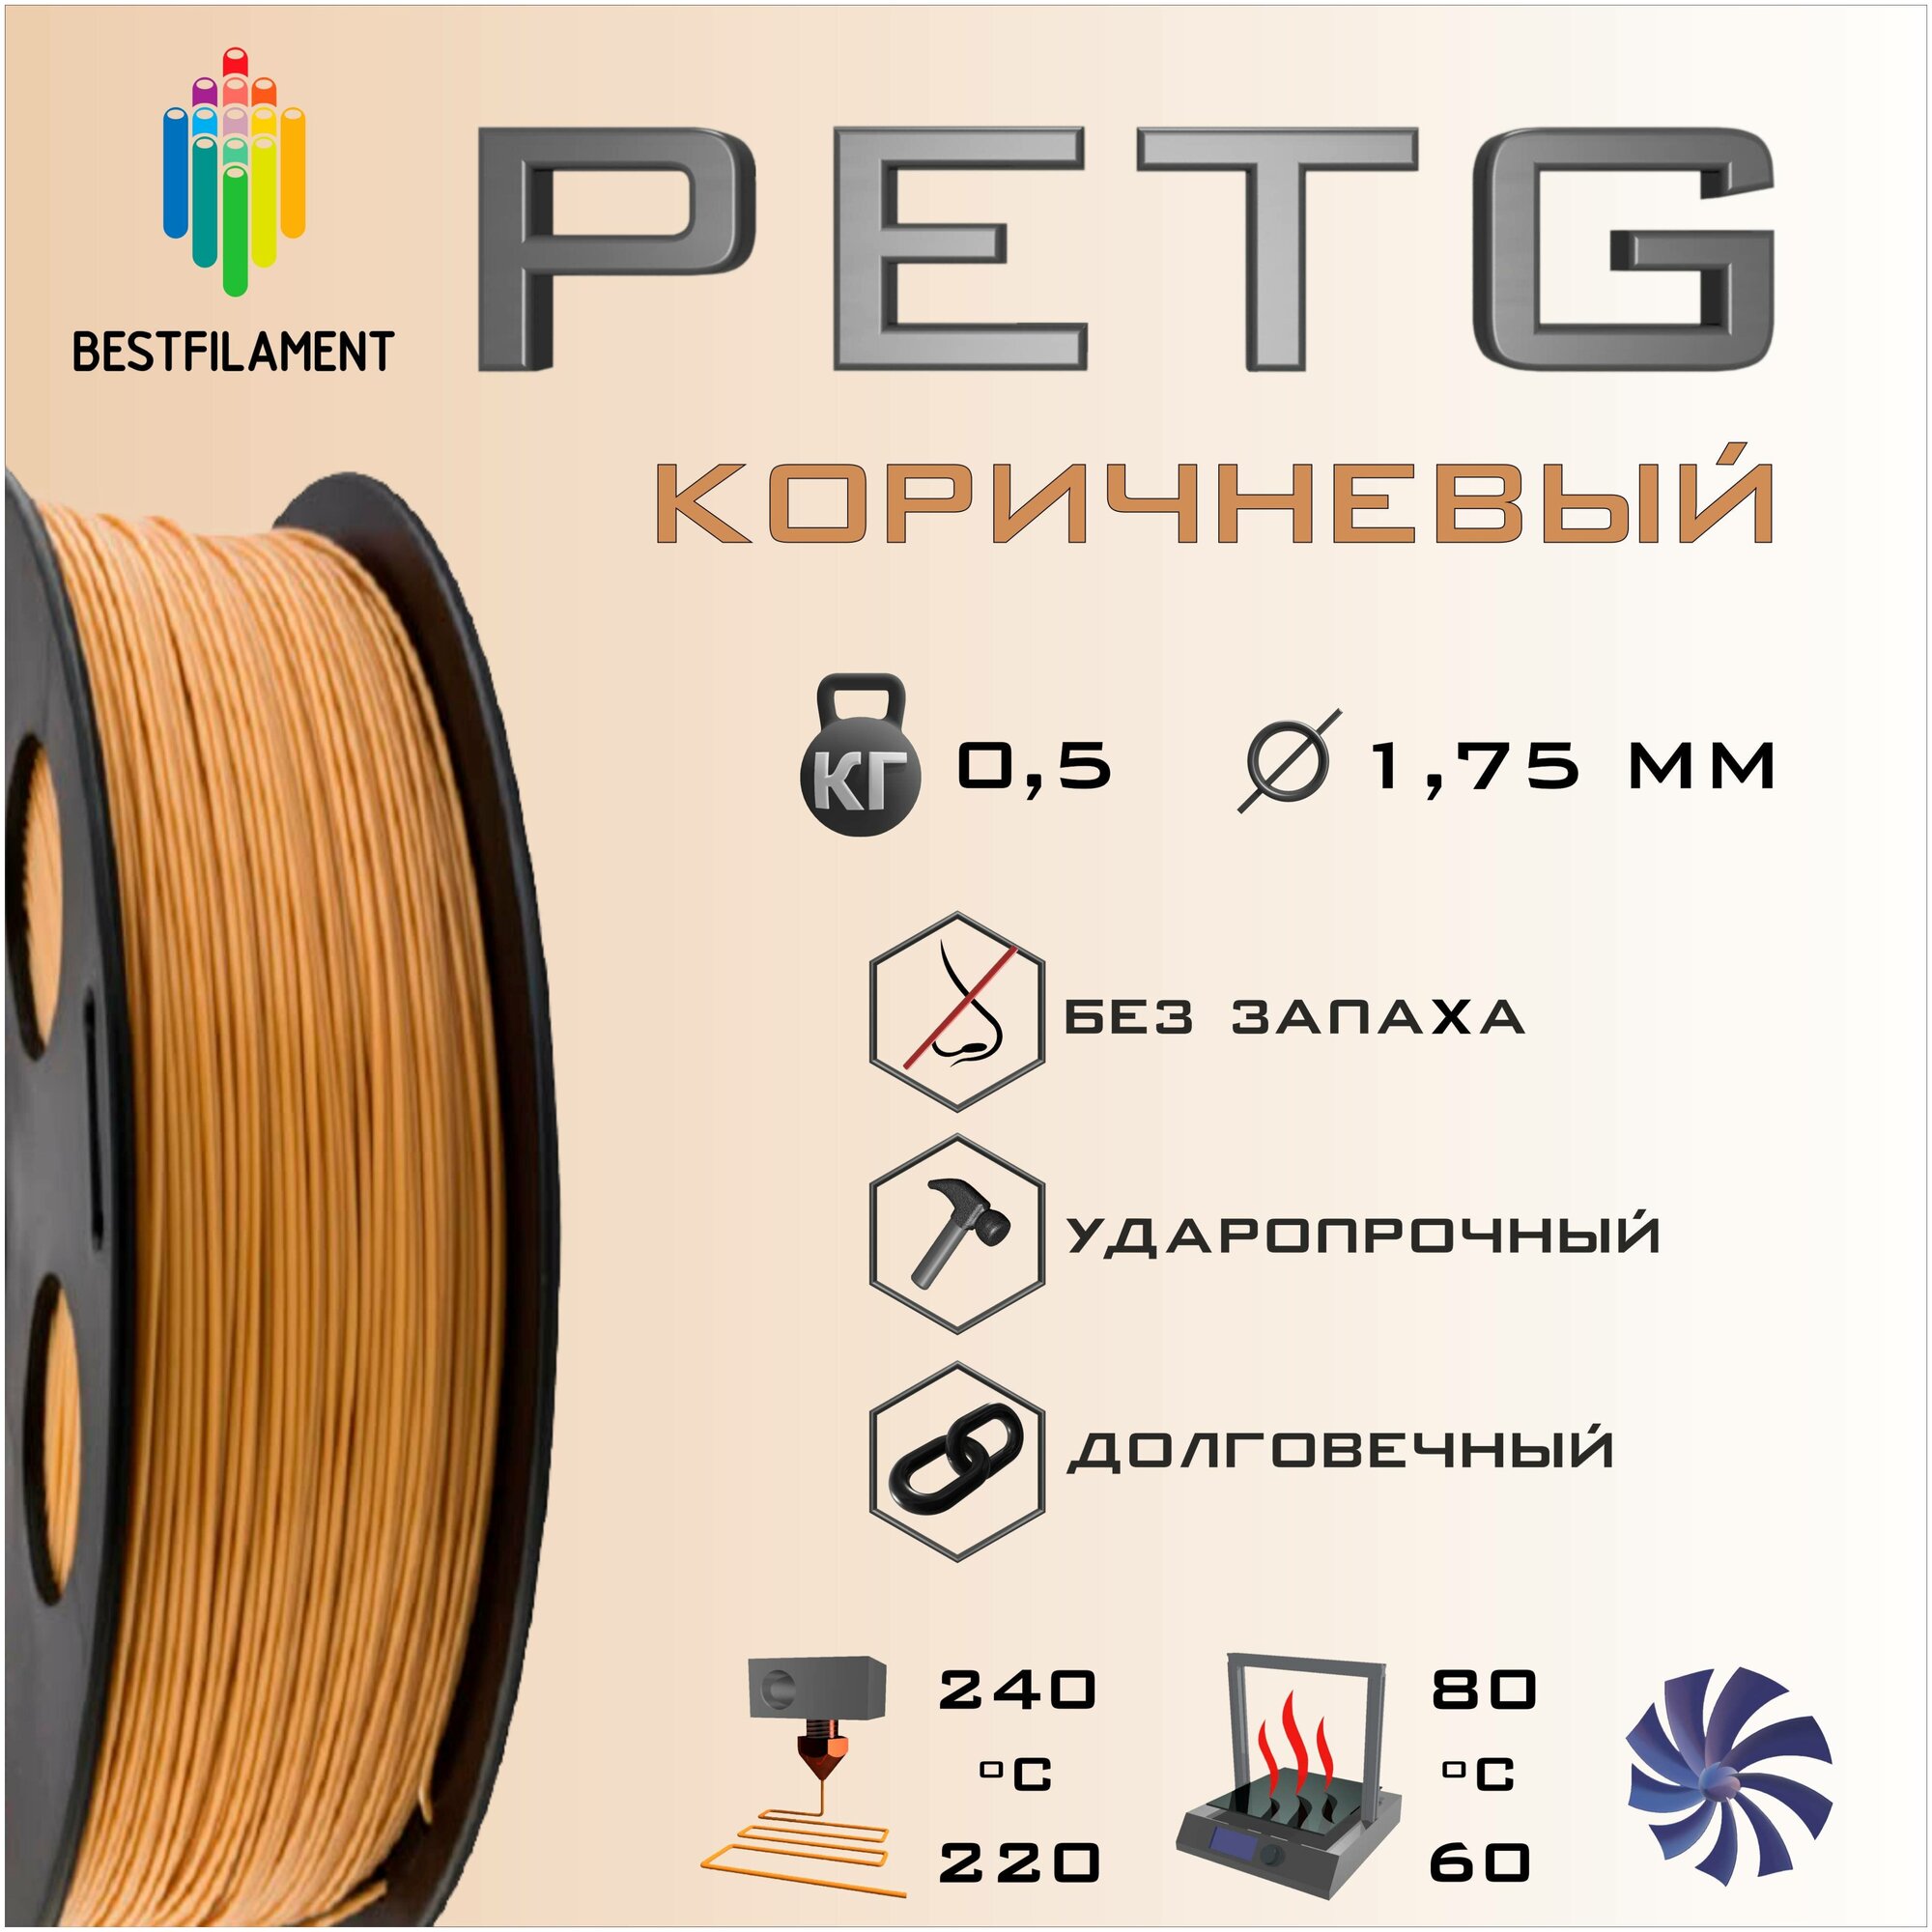 PETG Коричневый 500 гр. 1.75 мм пластик Bestfilament для 3D-принтера